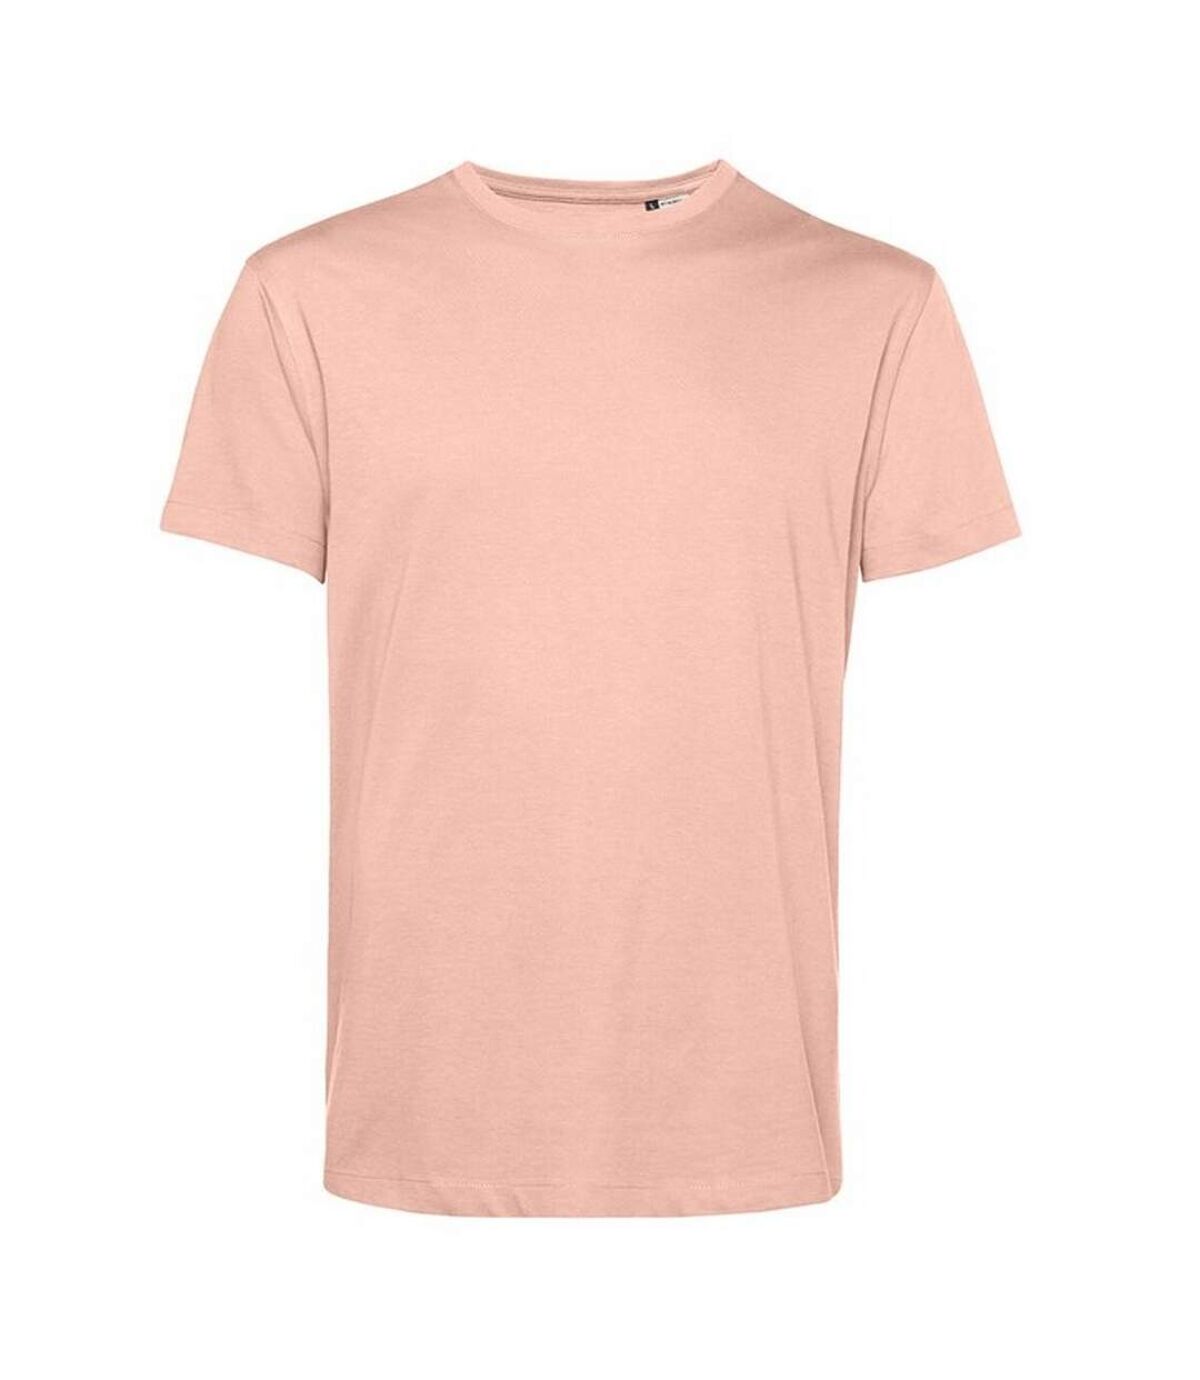 B&C T-Shirt Mens E150 (Rose moelleuse) - UTRW7787